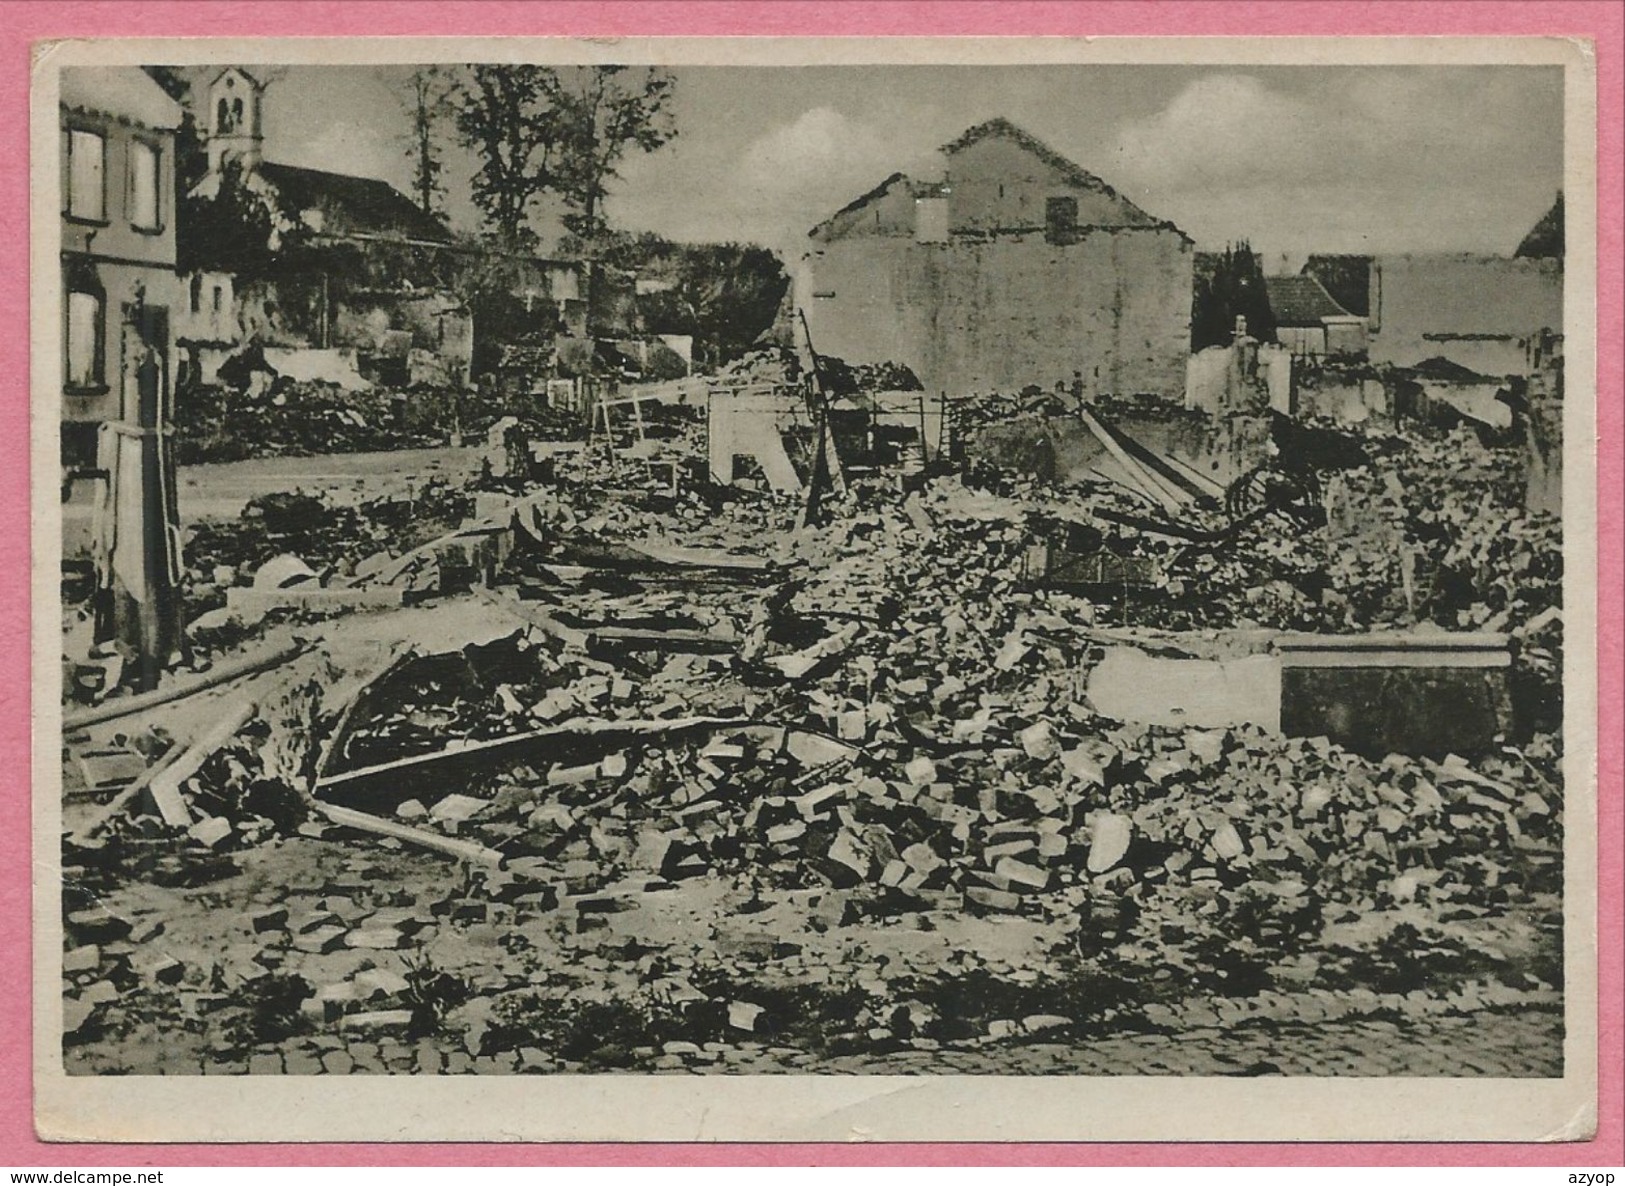 67 - LAUTERBURG - LAUTERBOURG - Format 10,5 X 14,5 - Französische Beschiessung - Destructions Françaises - Guerre 39/45 - Lauterbourg